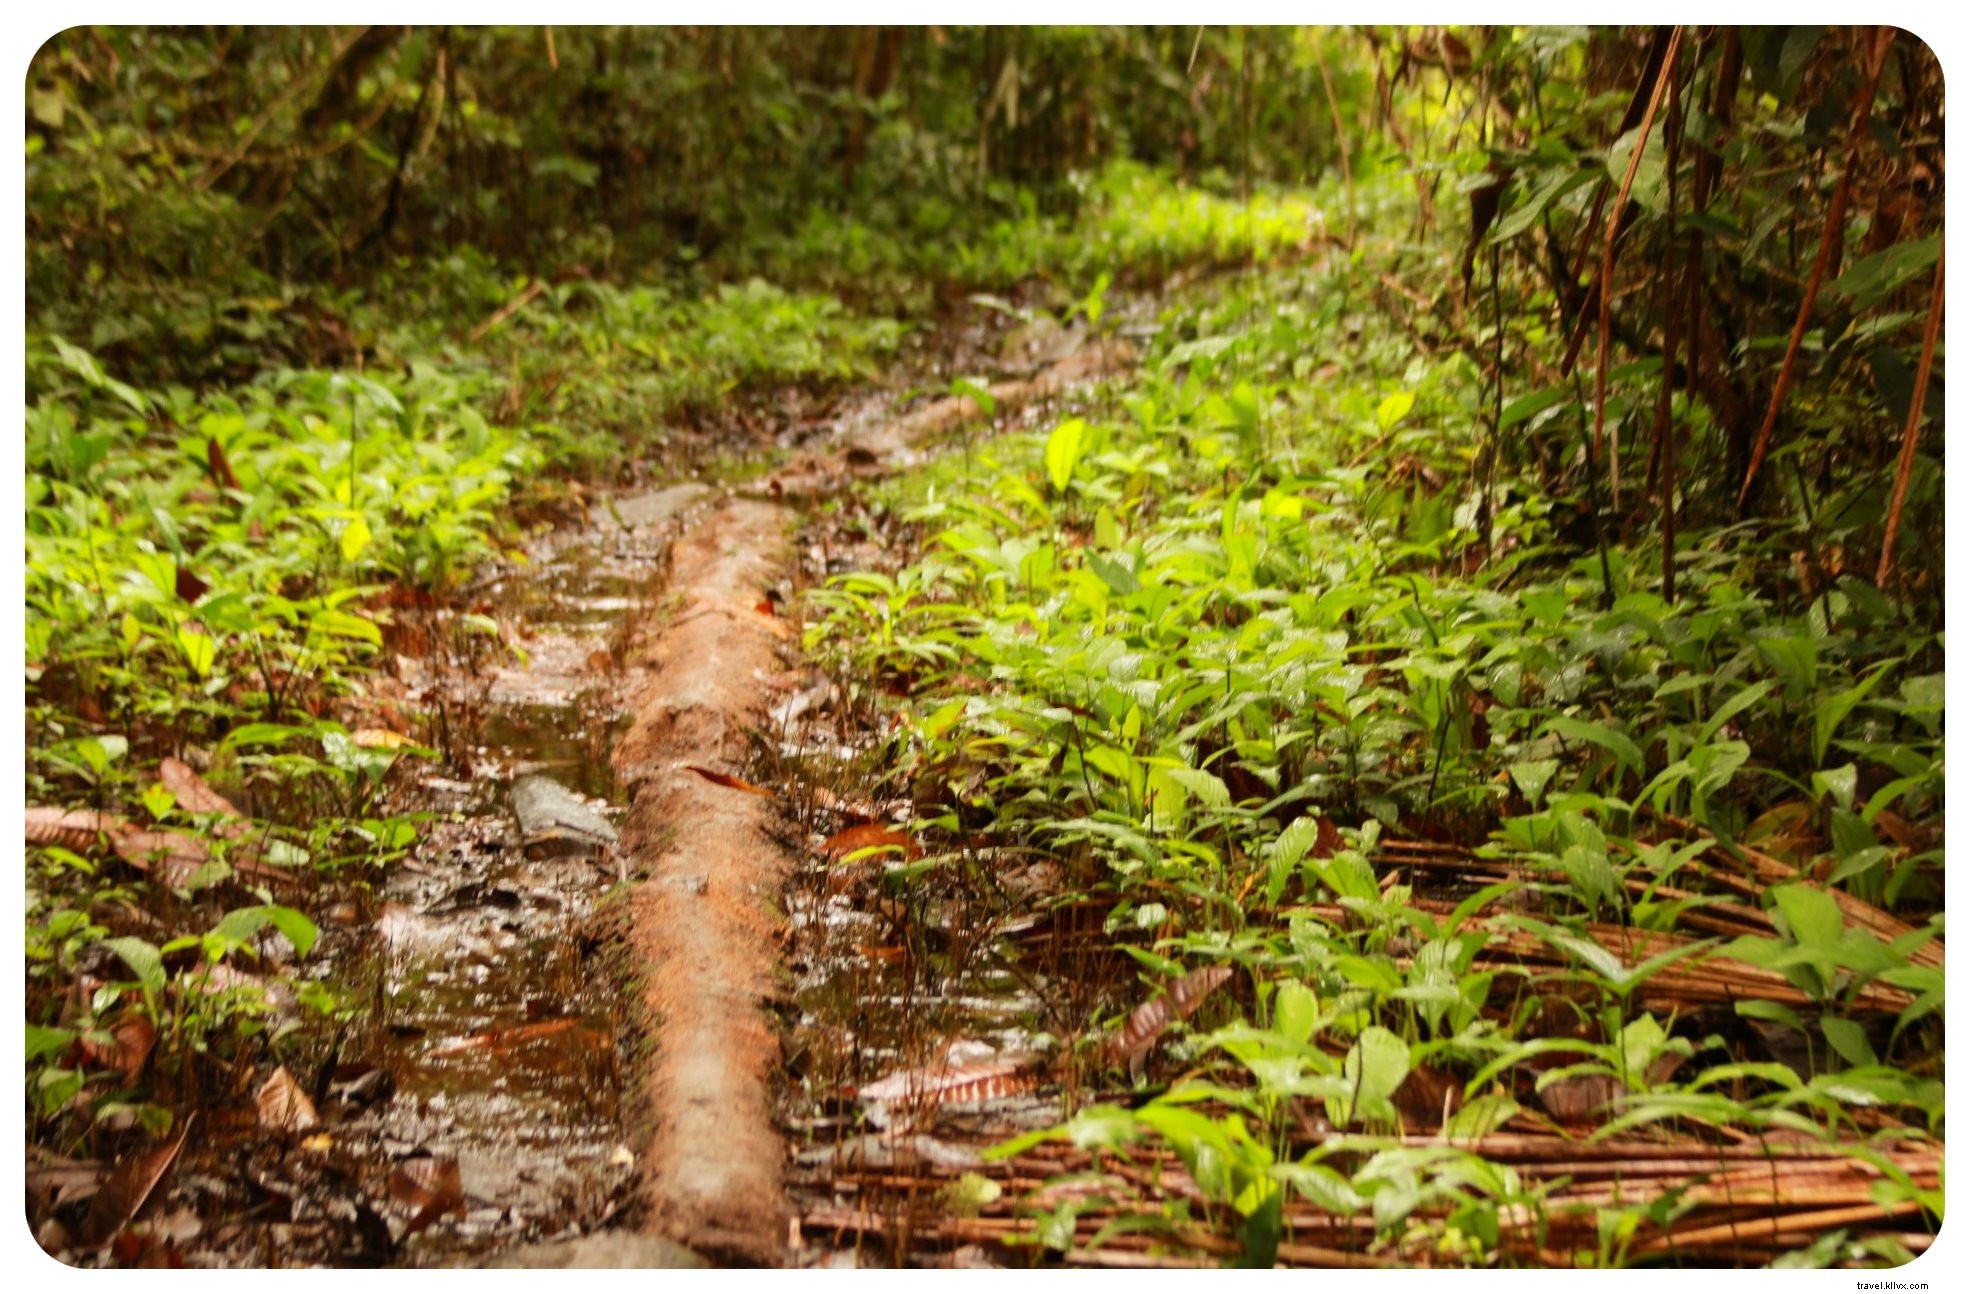 Alla ricerca dei miei demoni interiori nella giungla colombiana:un appuntamento con l ayahuasca